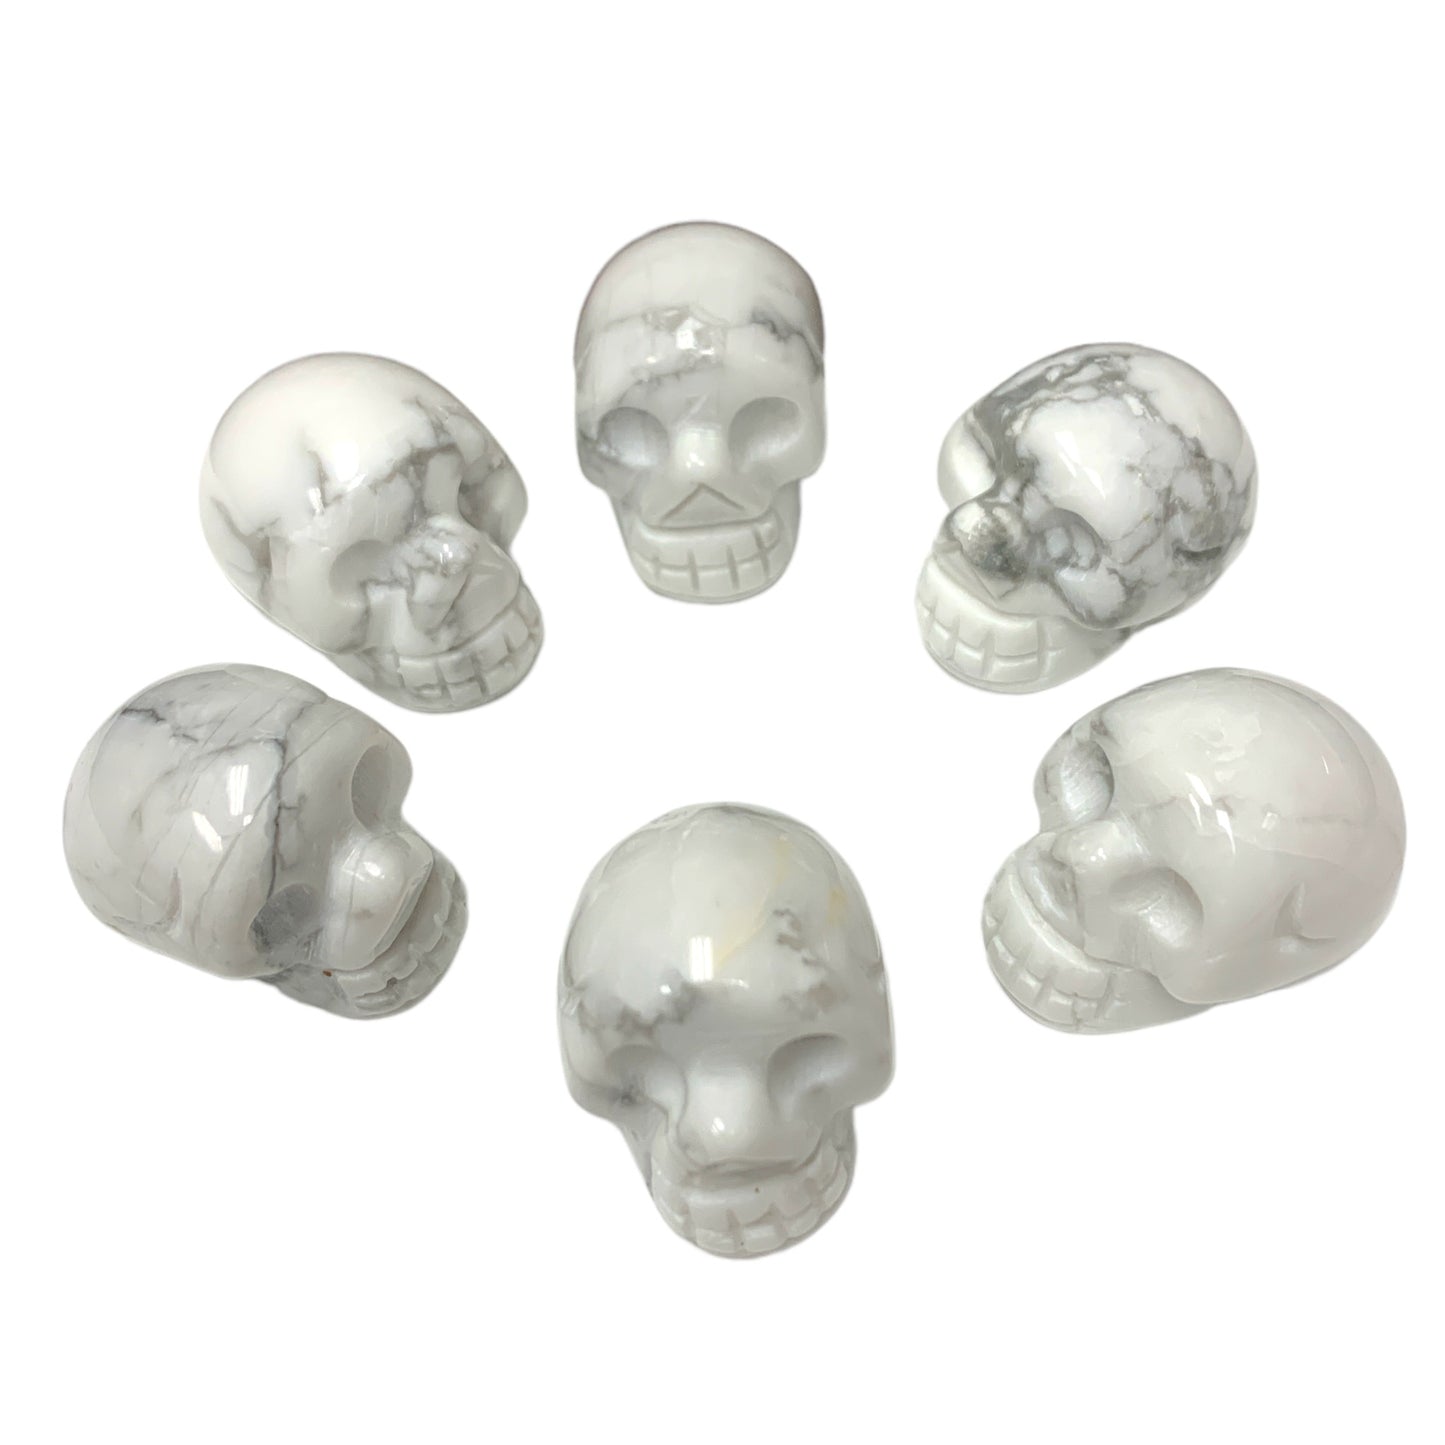 Skull Mini - White Howlite -  30-35mm Grams - China - NEW722